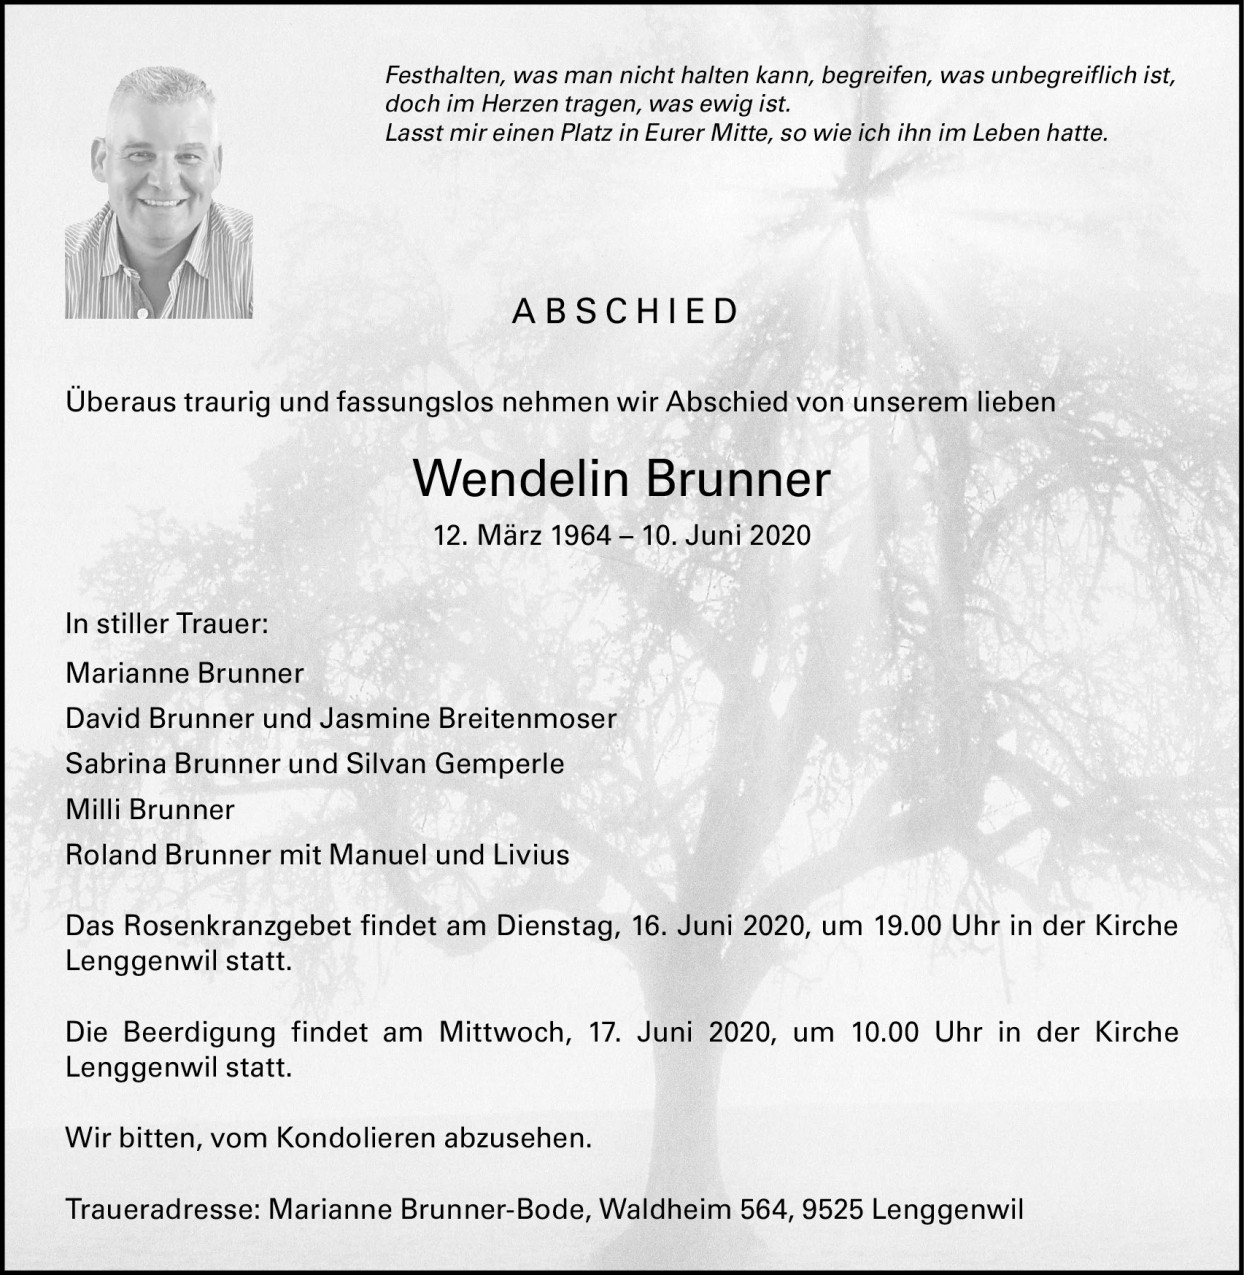 Wendelin Brunner